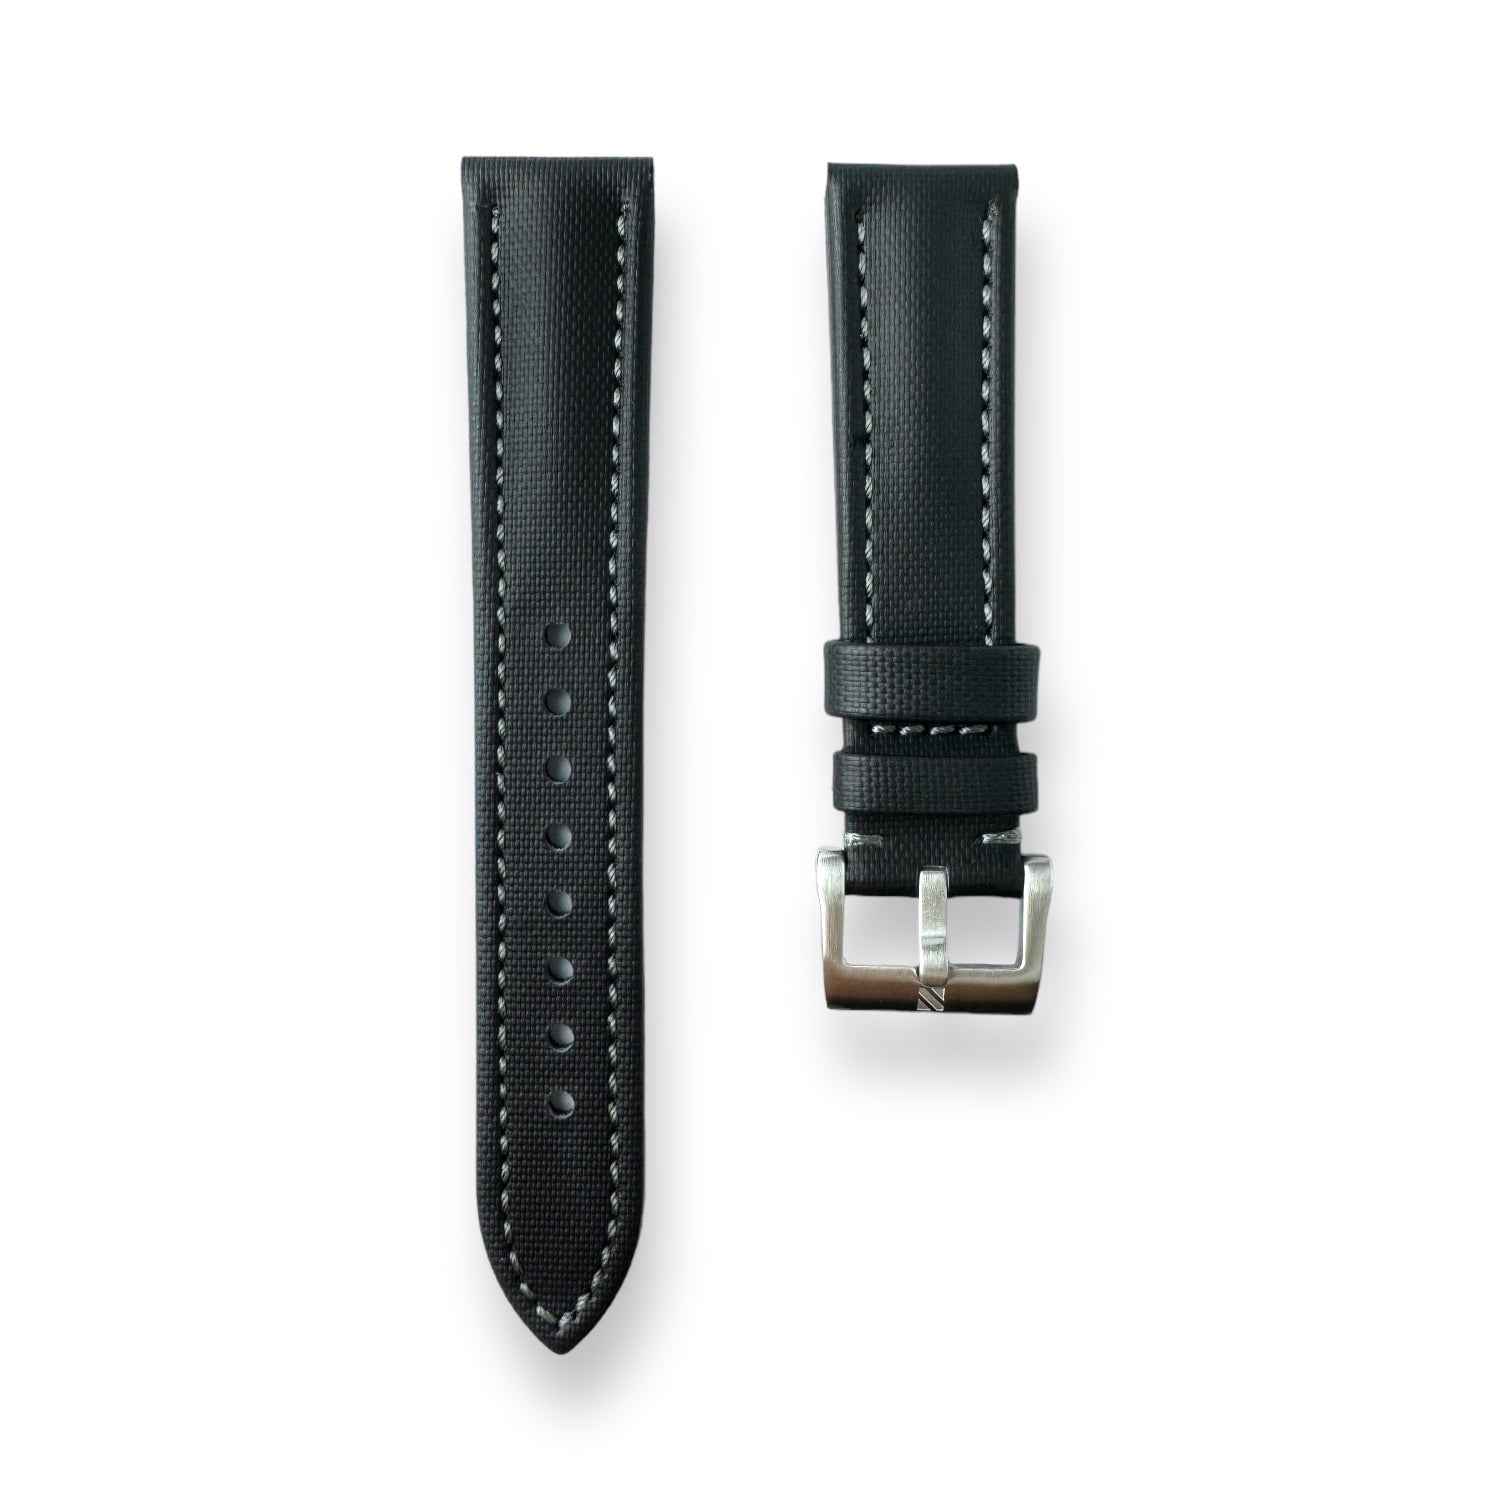 Premium Black Sailcloth Watch Strap With Grey Stitching